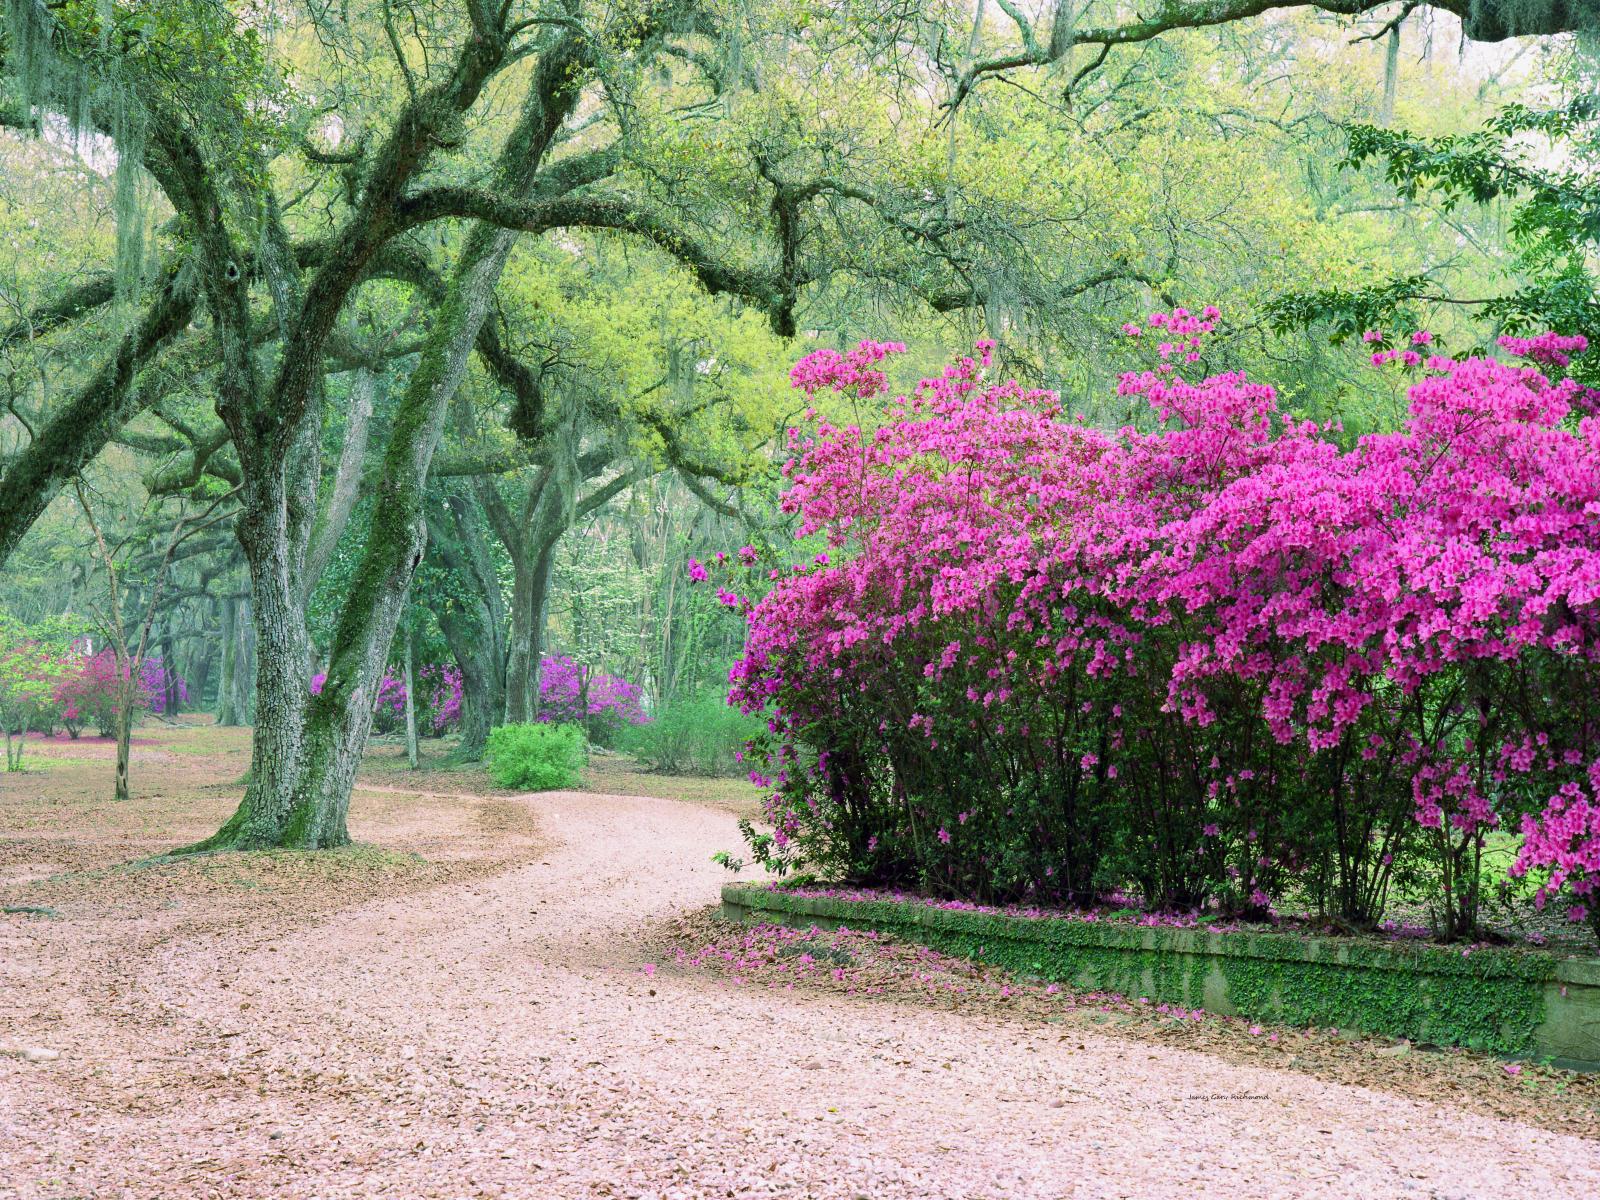 01533 avery gardens La., path, floral, old oaks,,.jpg